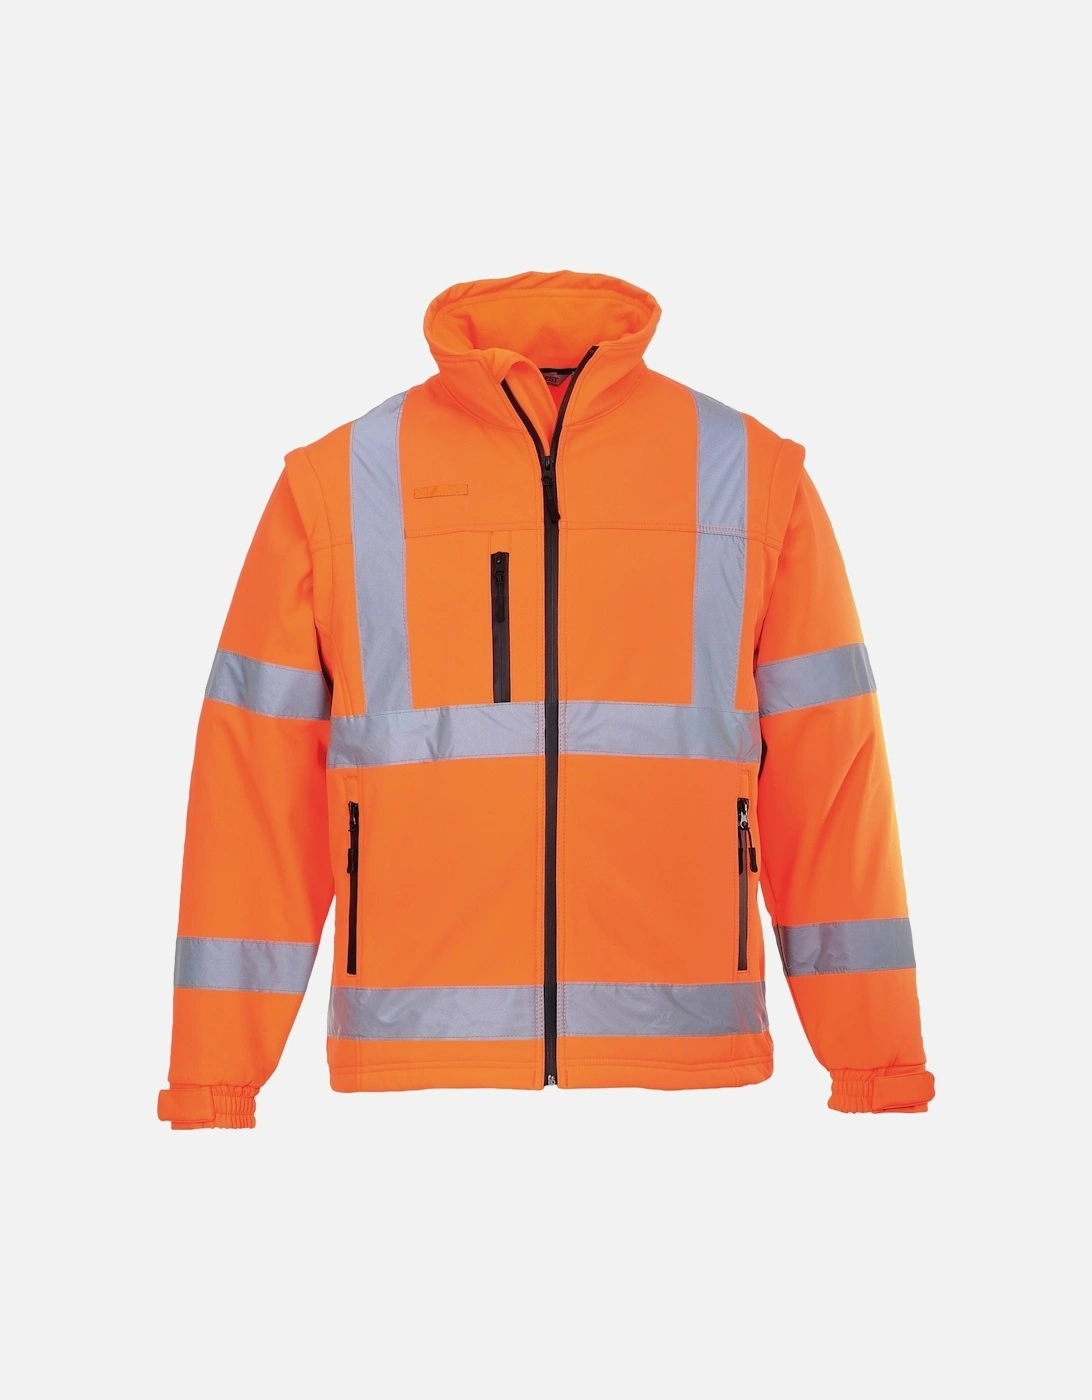 Unisex Hi-Vis Safety Softshell Jacket, 2 of 1